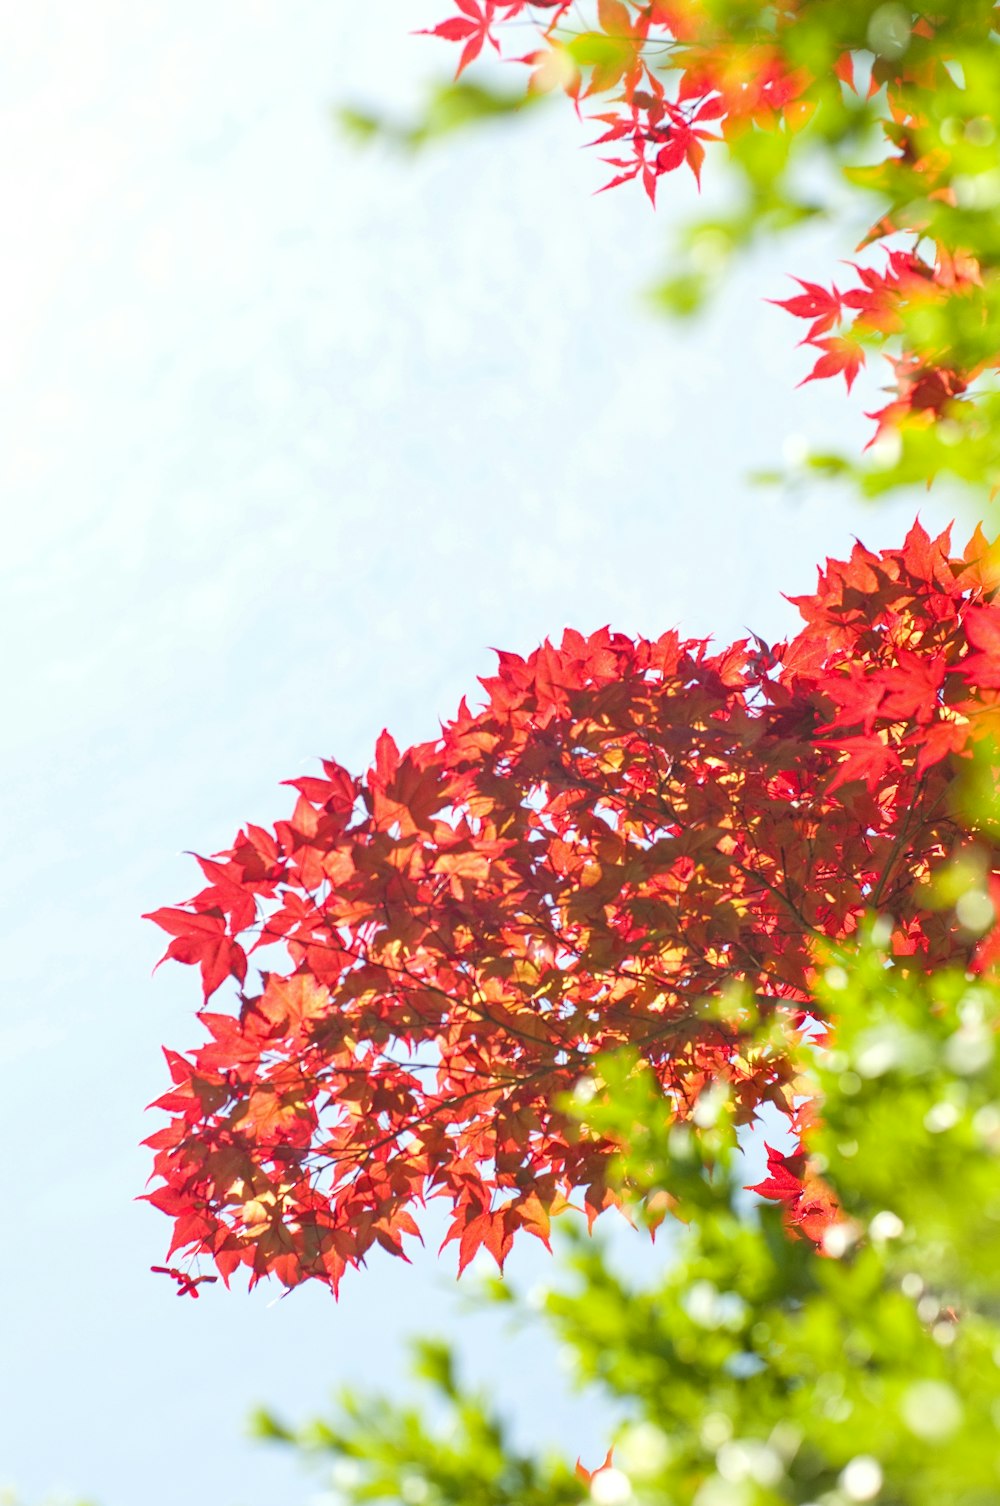 Red leafed tree under sunlight photo – Free Tree Image on Unsplash